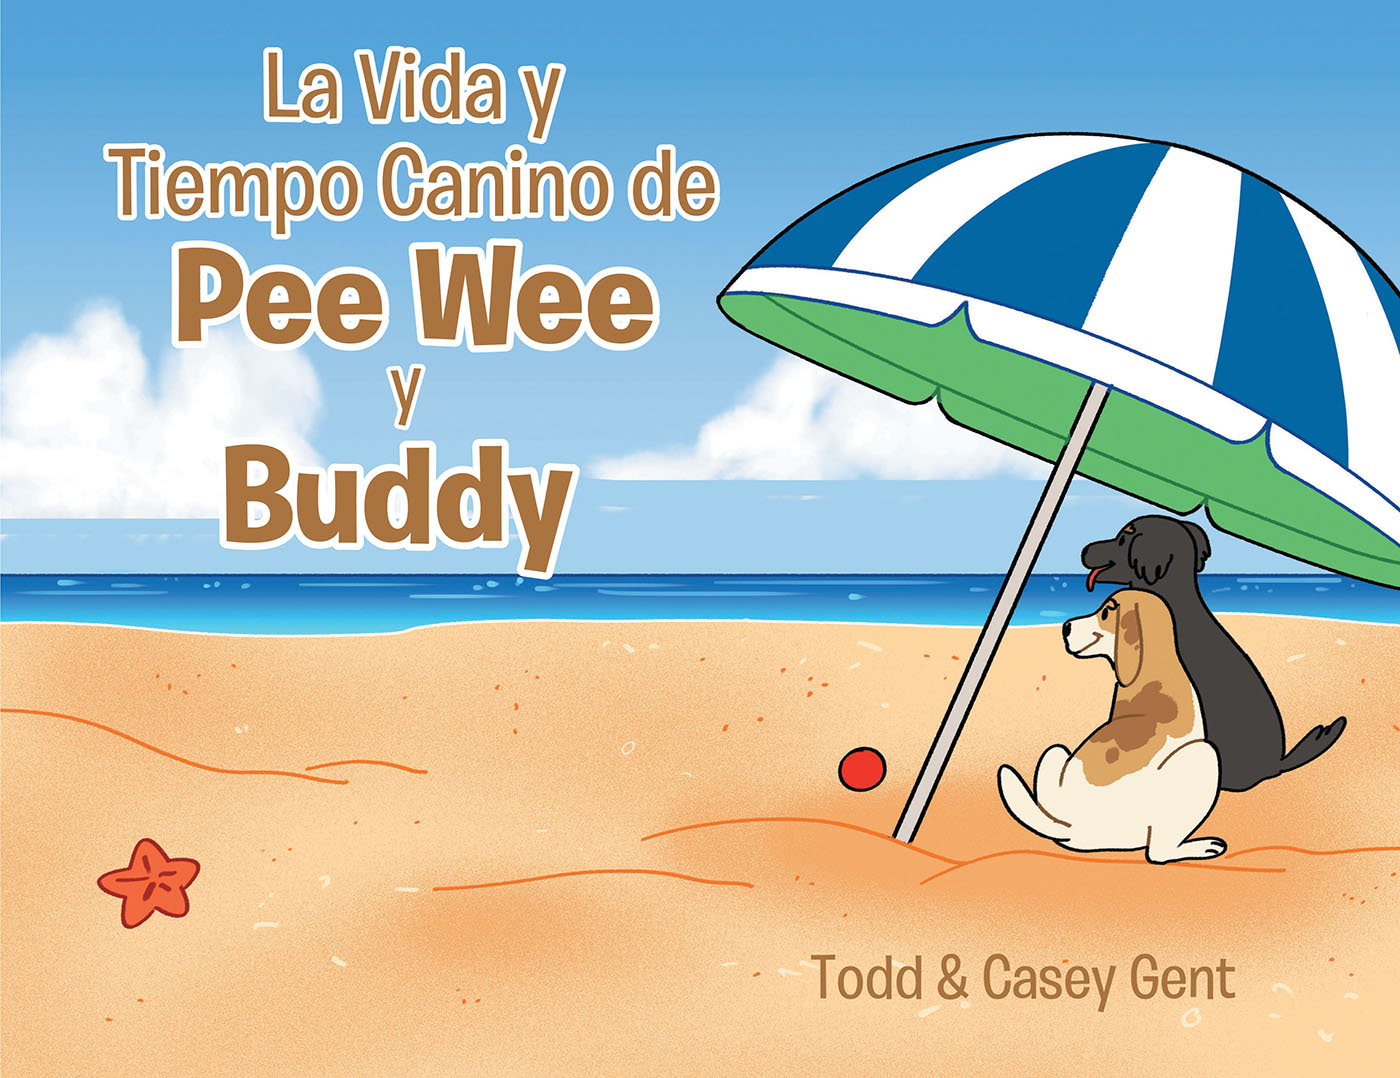 La Vida y Tiempo Canino de Pee Wee y Buddy Cover Image